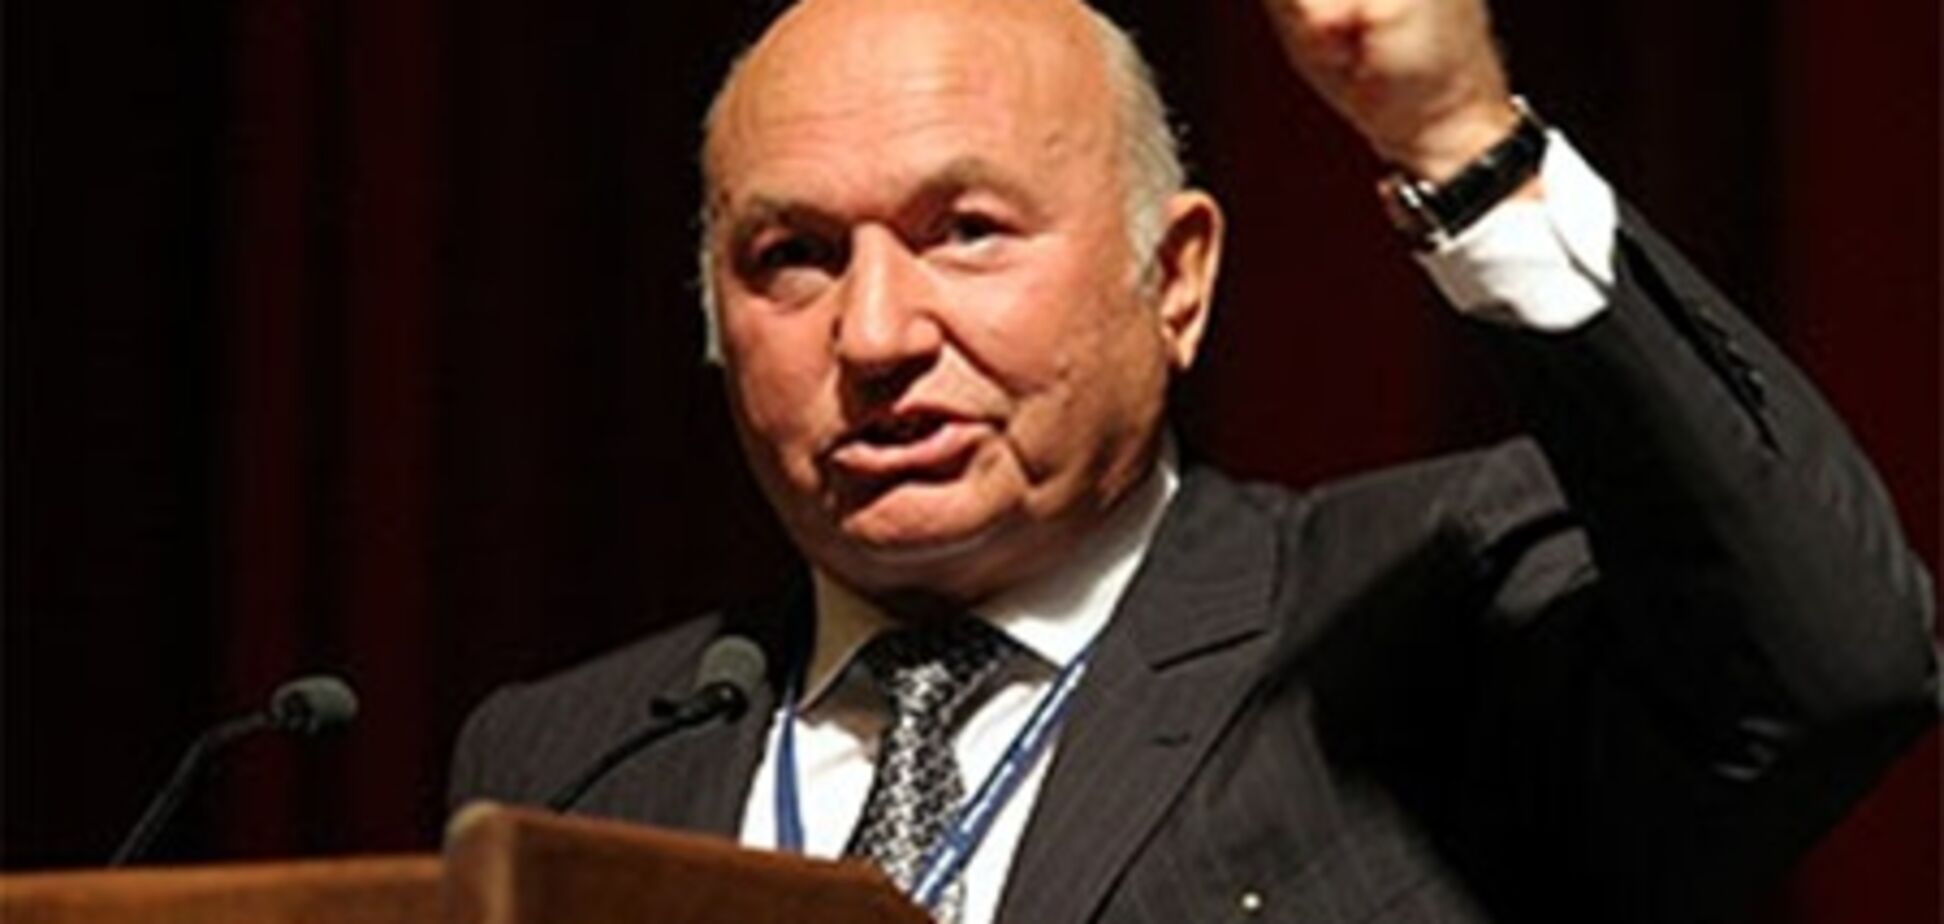 ПР: Лужков – достойный кандидат, но возглавить Крым он не сможет